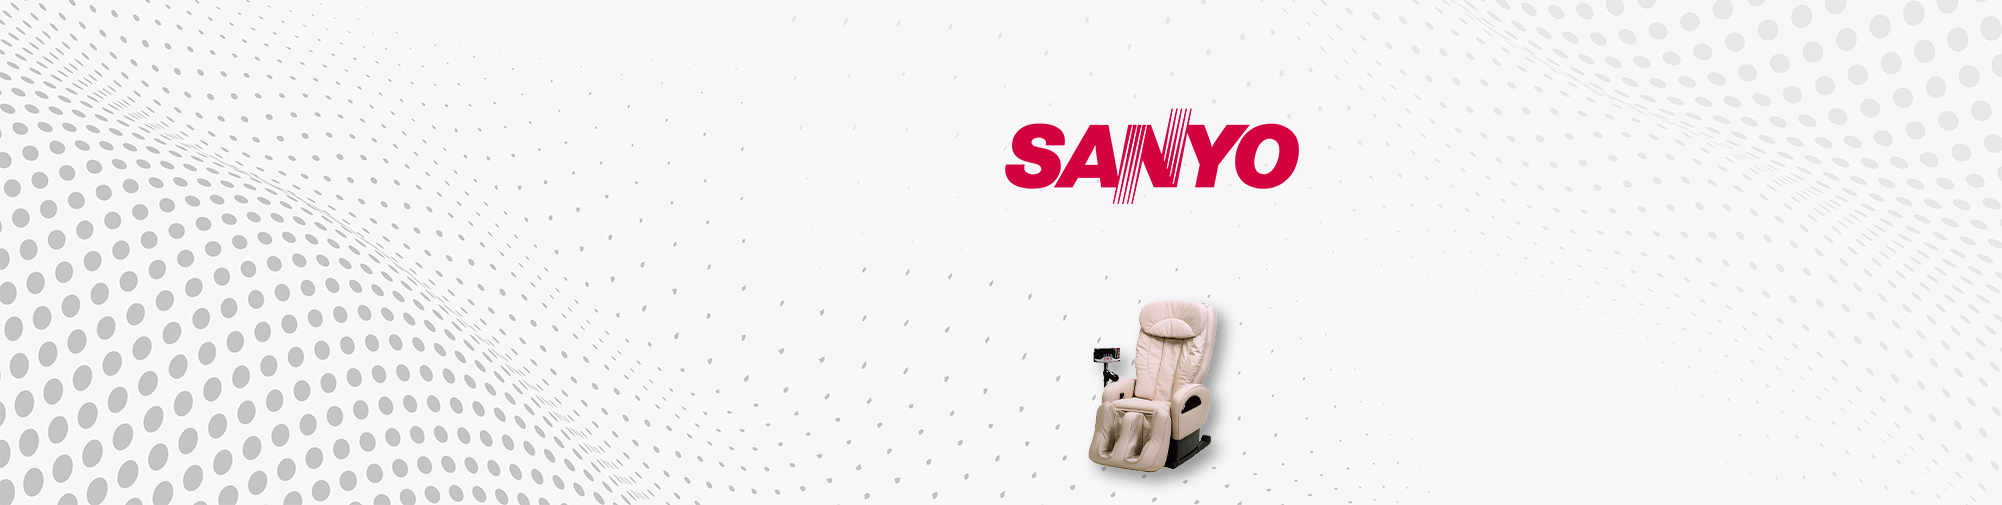 SANYO - entreprise de marque japonaise | Le monde des fauteuils de massage